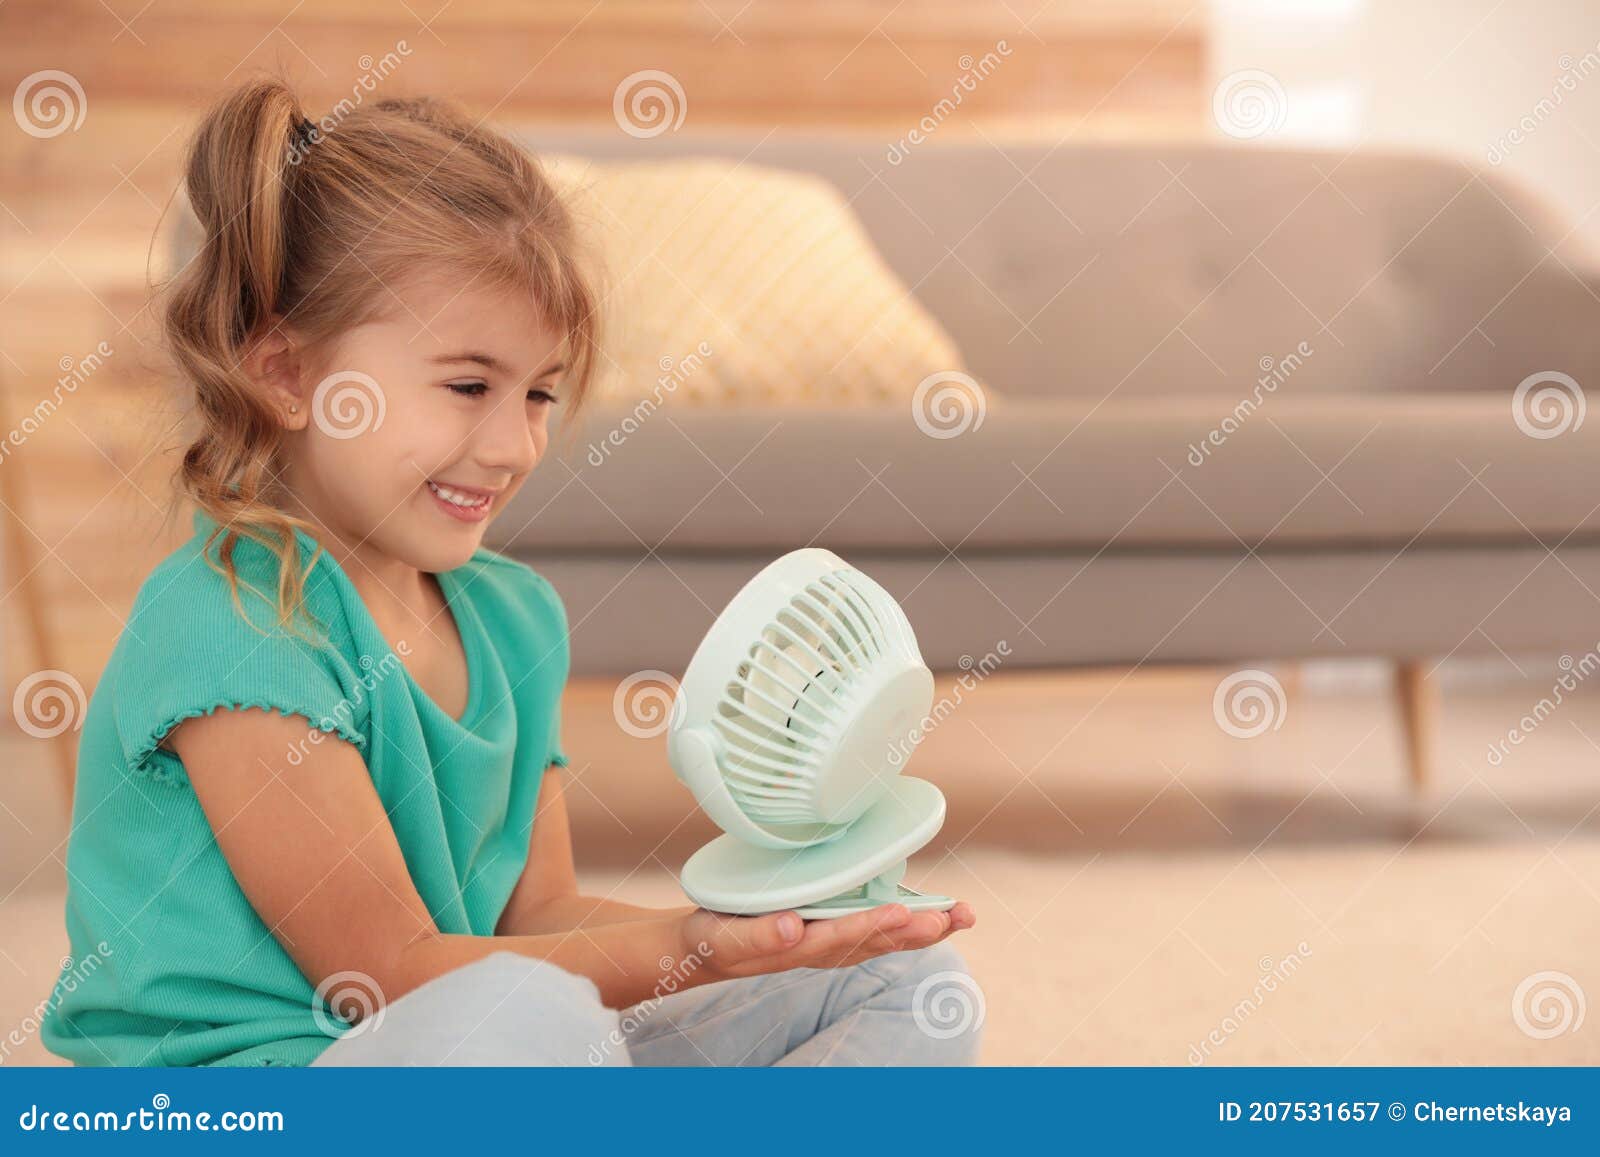 portable fan for living room